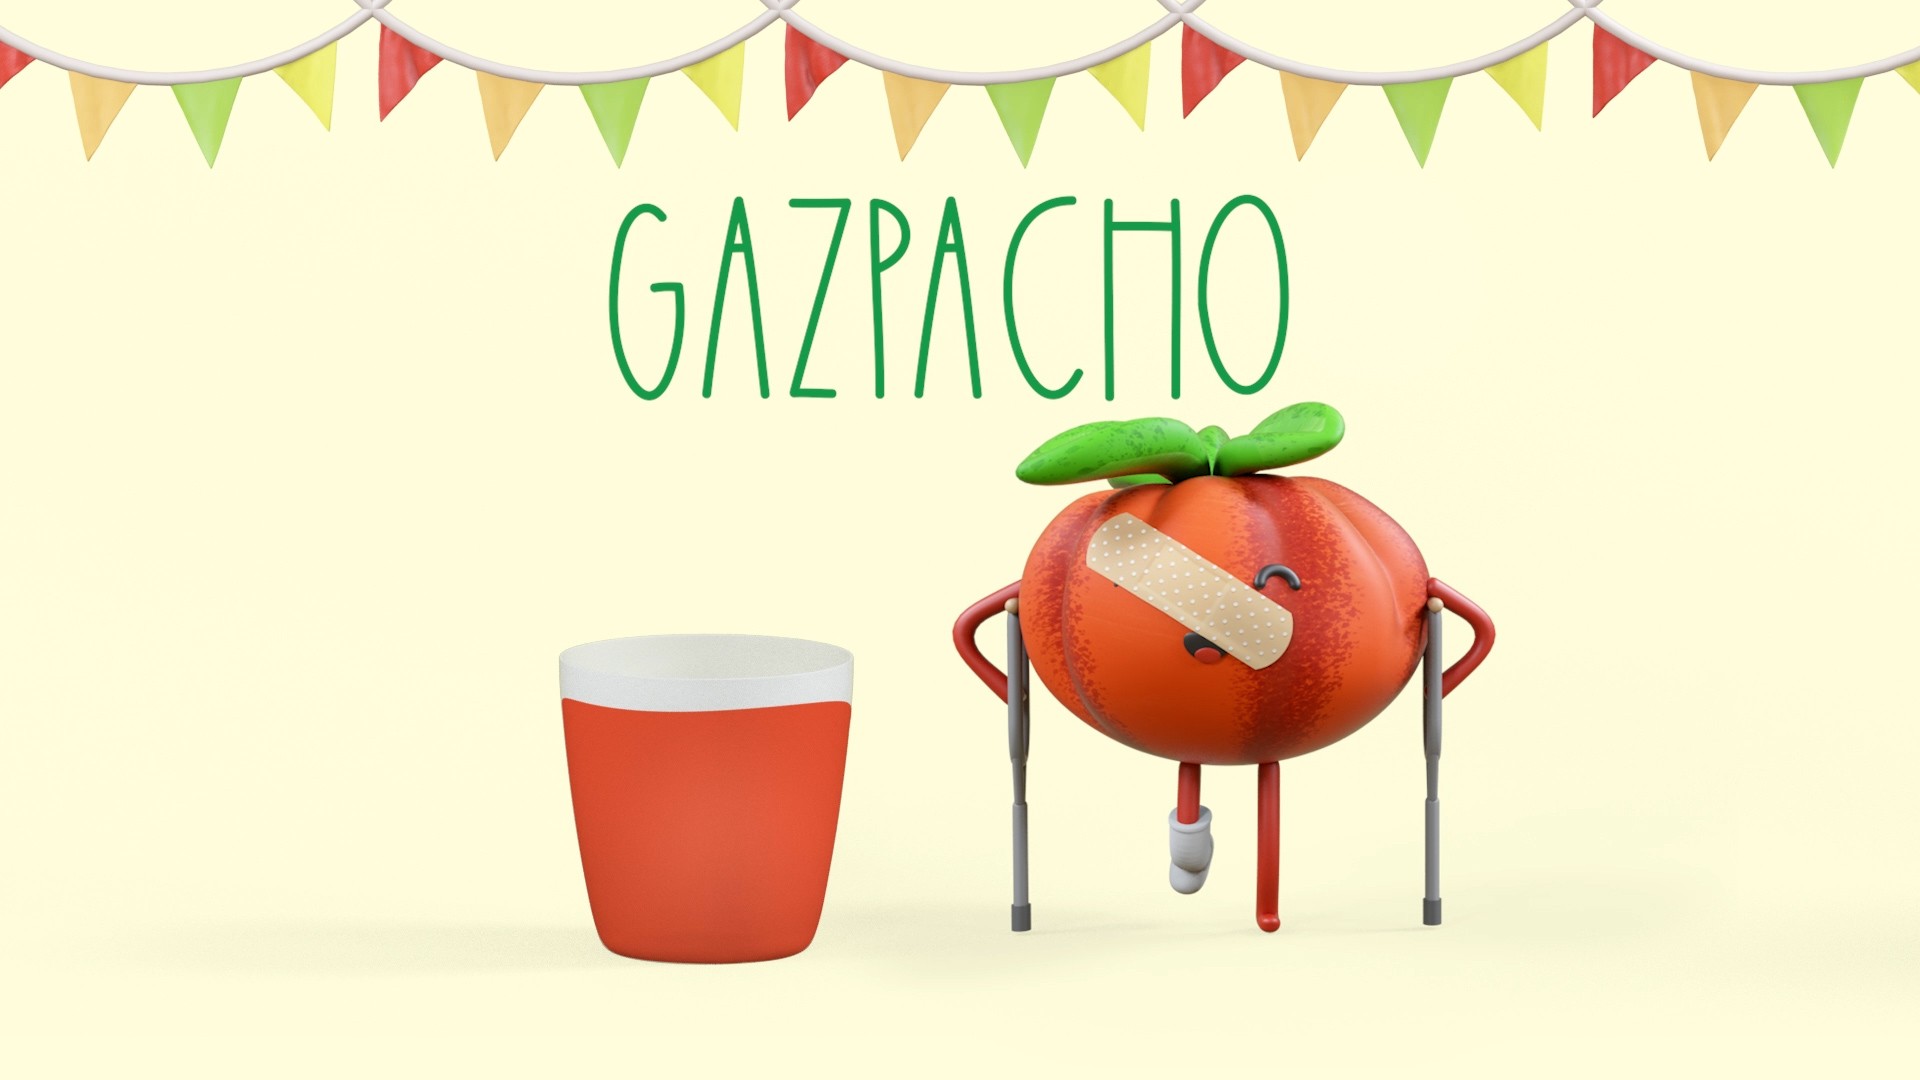 verletzte Tomate nehmen einem gefüllten Glas mit Gazpacho Suppe